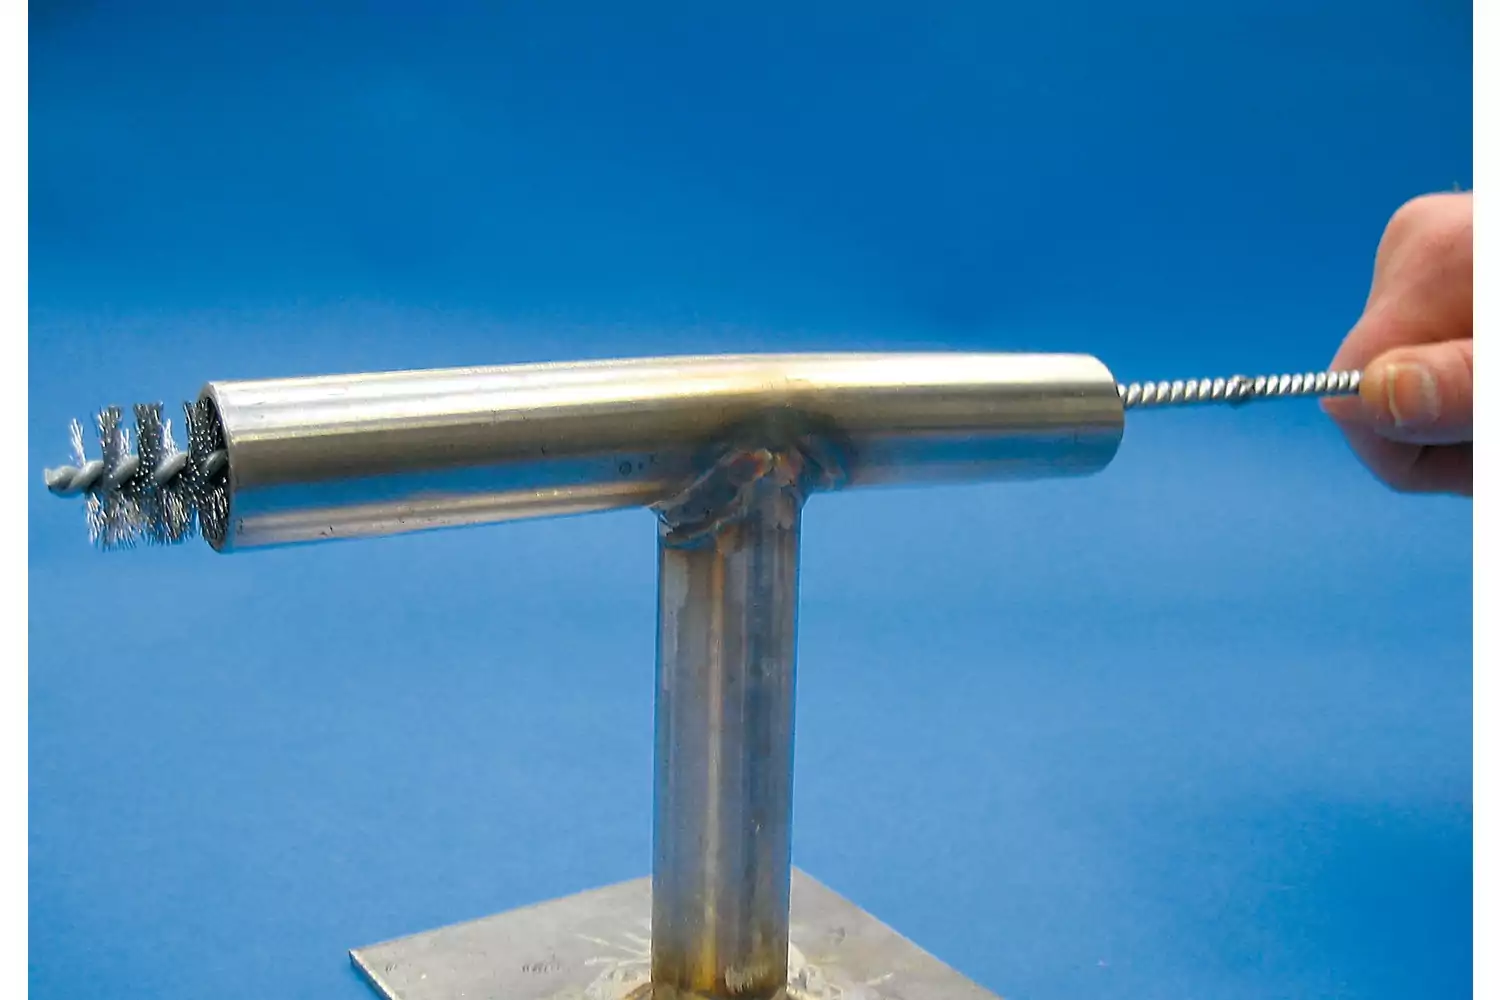 Accesorios de prolongador IBUV para cepillos limpiatubos con rosca 1/2", 1000 mm de longitud 2